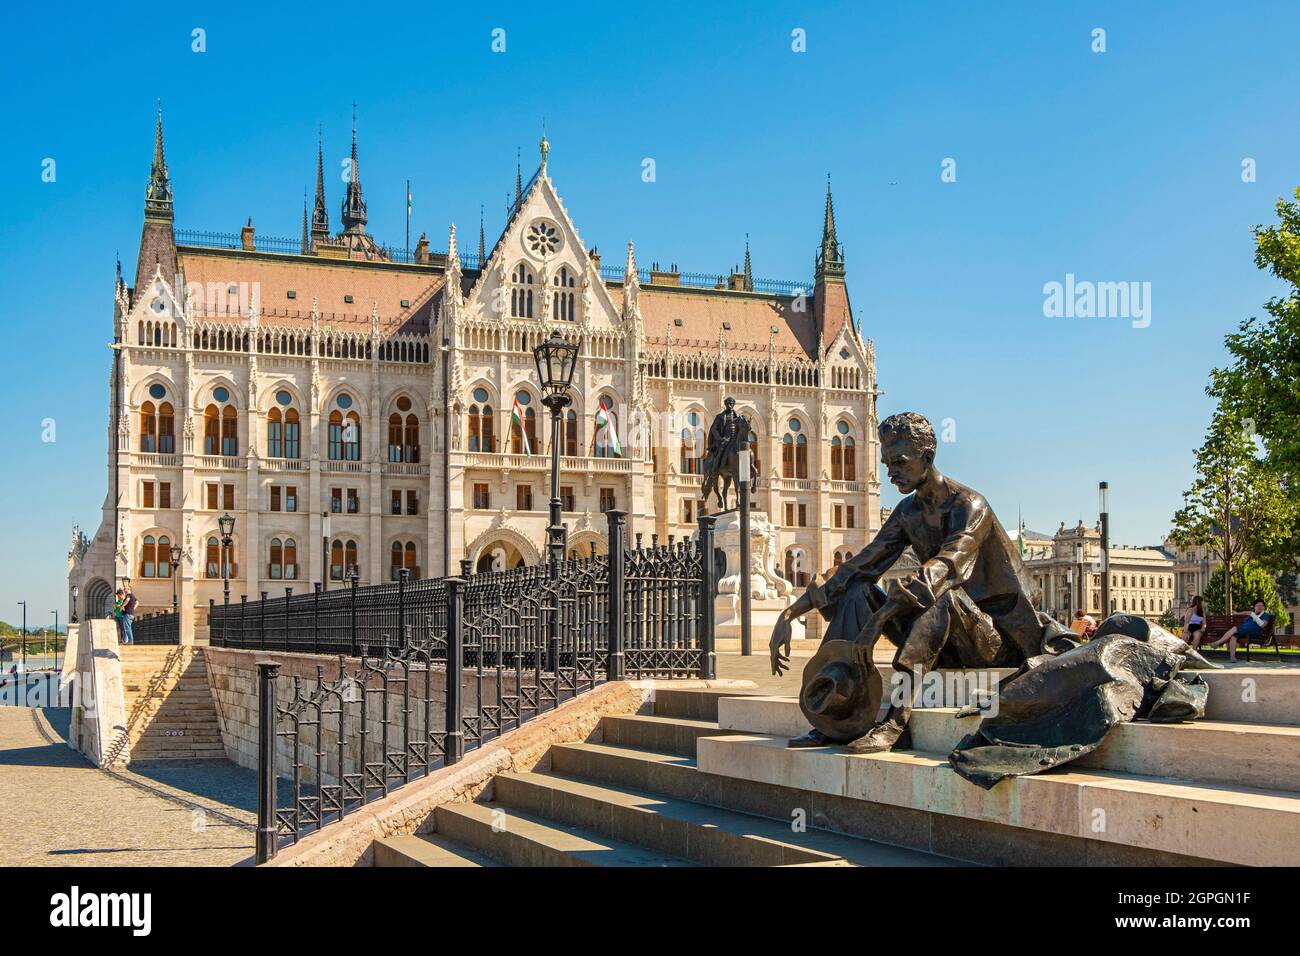 Ungheria, Budapest, dichiarata Patrimonio dell'Umanità dall'UNESCO, distretto di Pest, sulle rive del Danubio, Piazza Kossuth Lajos, statua di Attila József Foto Stock